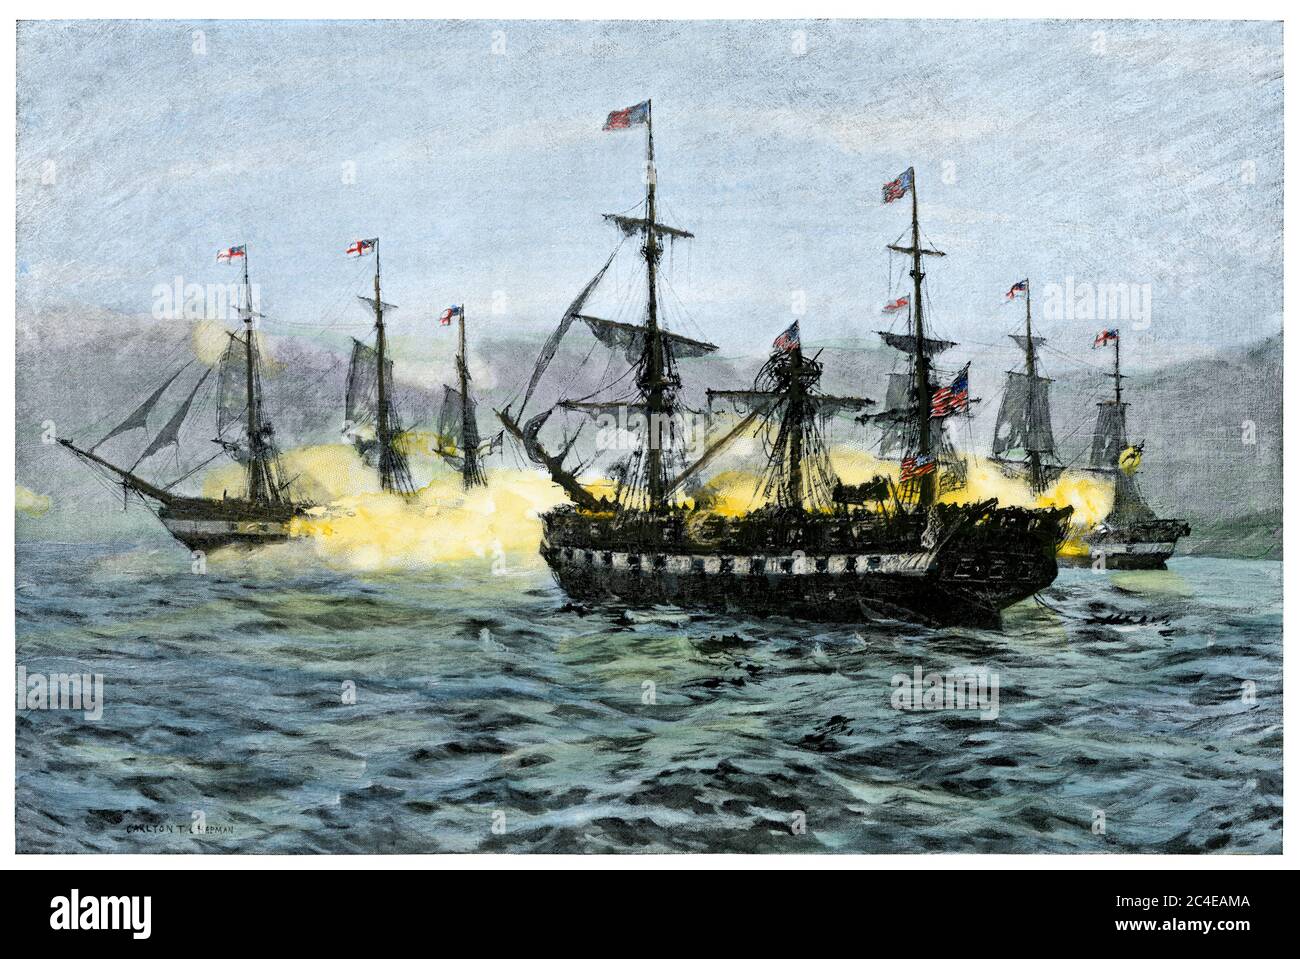 Cattura di USS Essex da parte di navi da guerra britanniche, Valparaiso, Cile, 1814. Mezzitoni colorati a mano di un'illustrazione Foto Stock